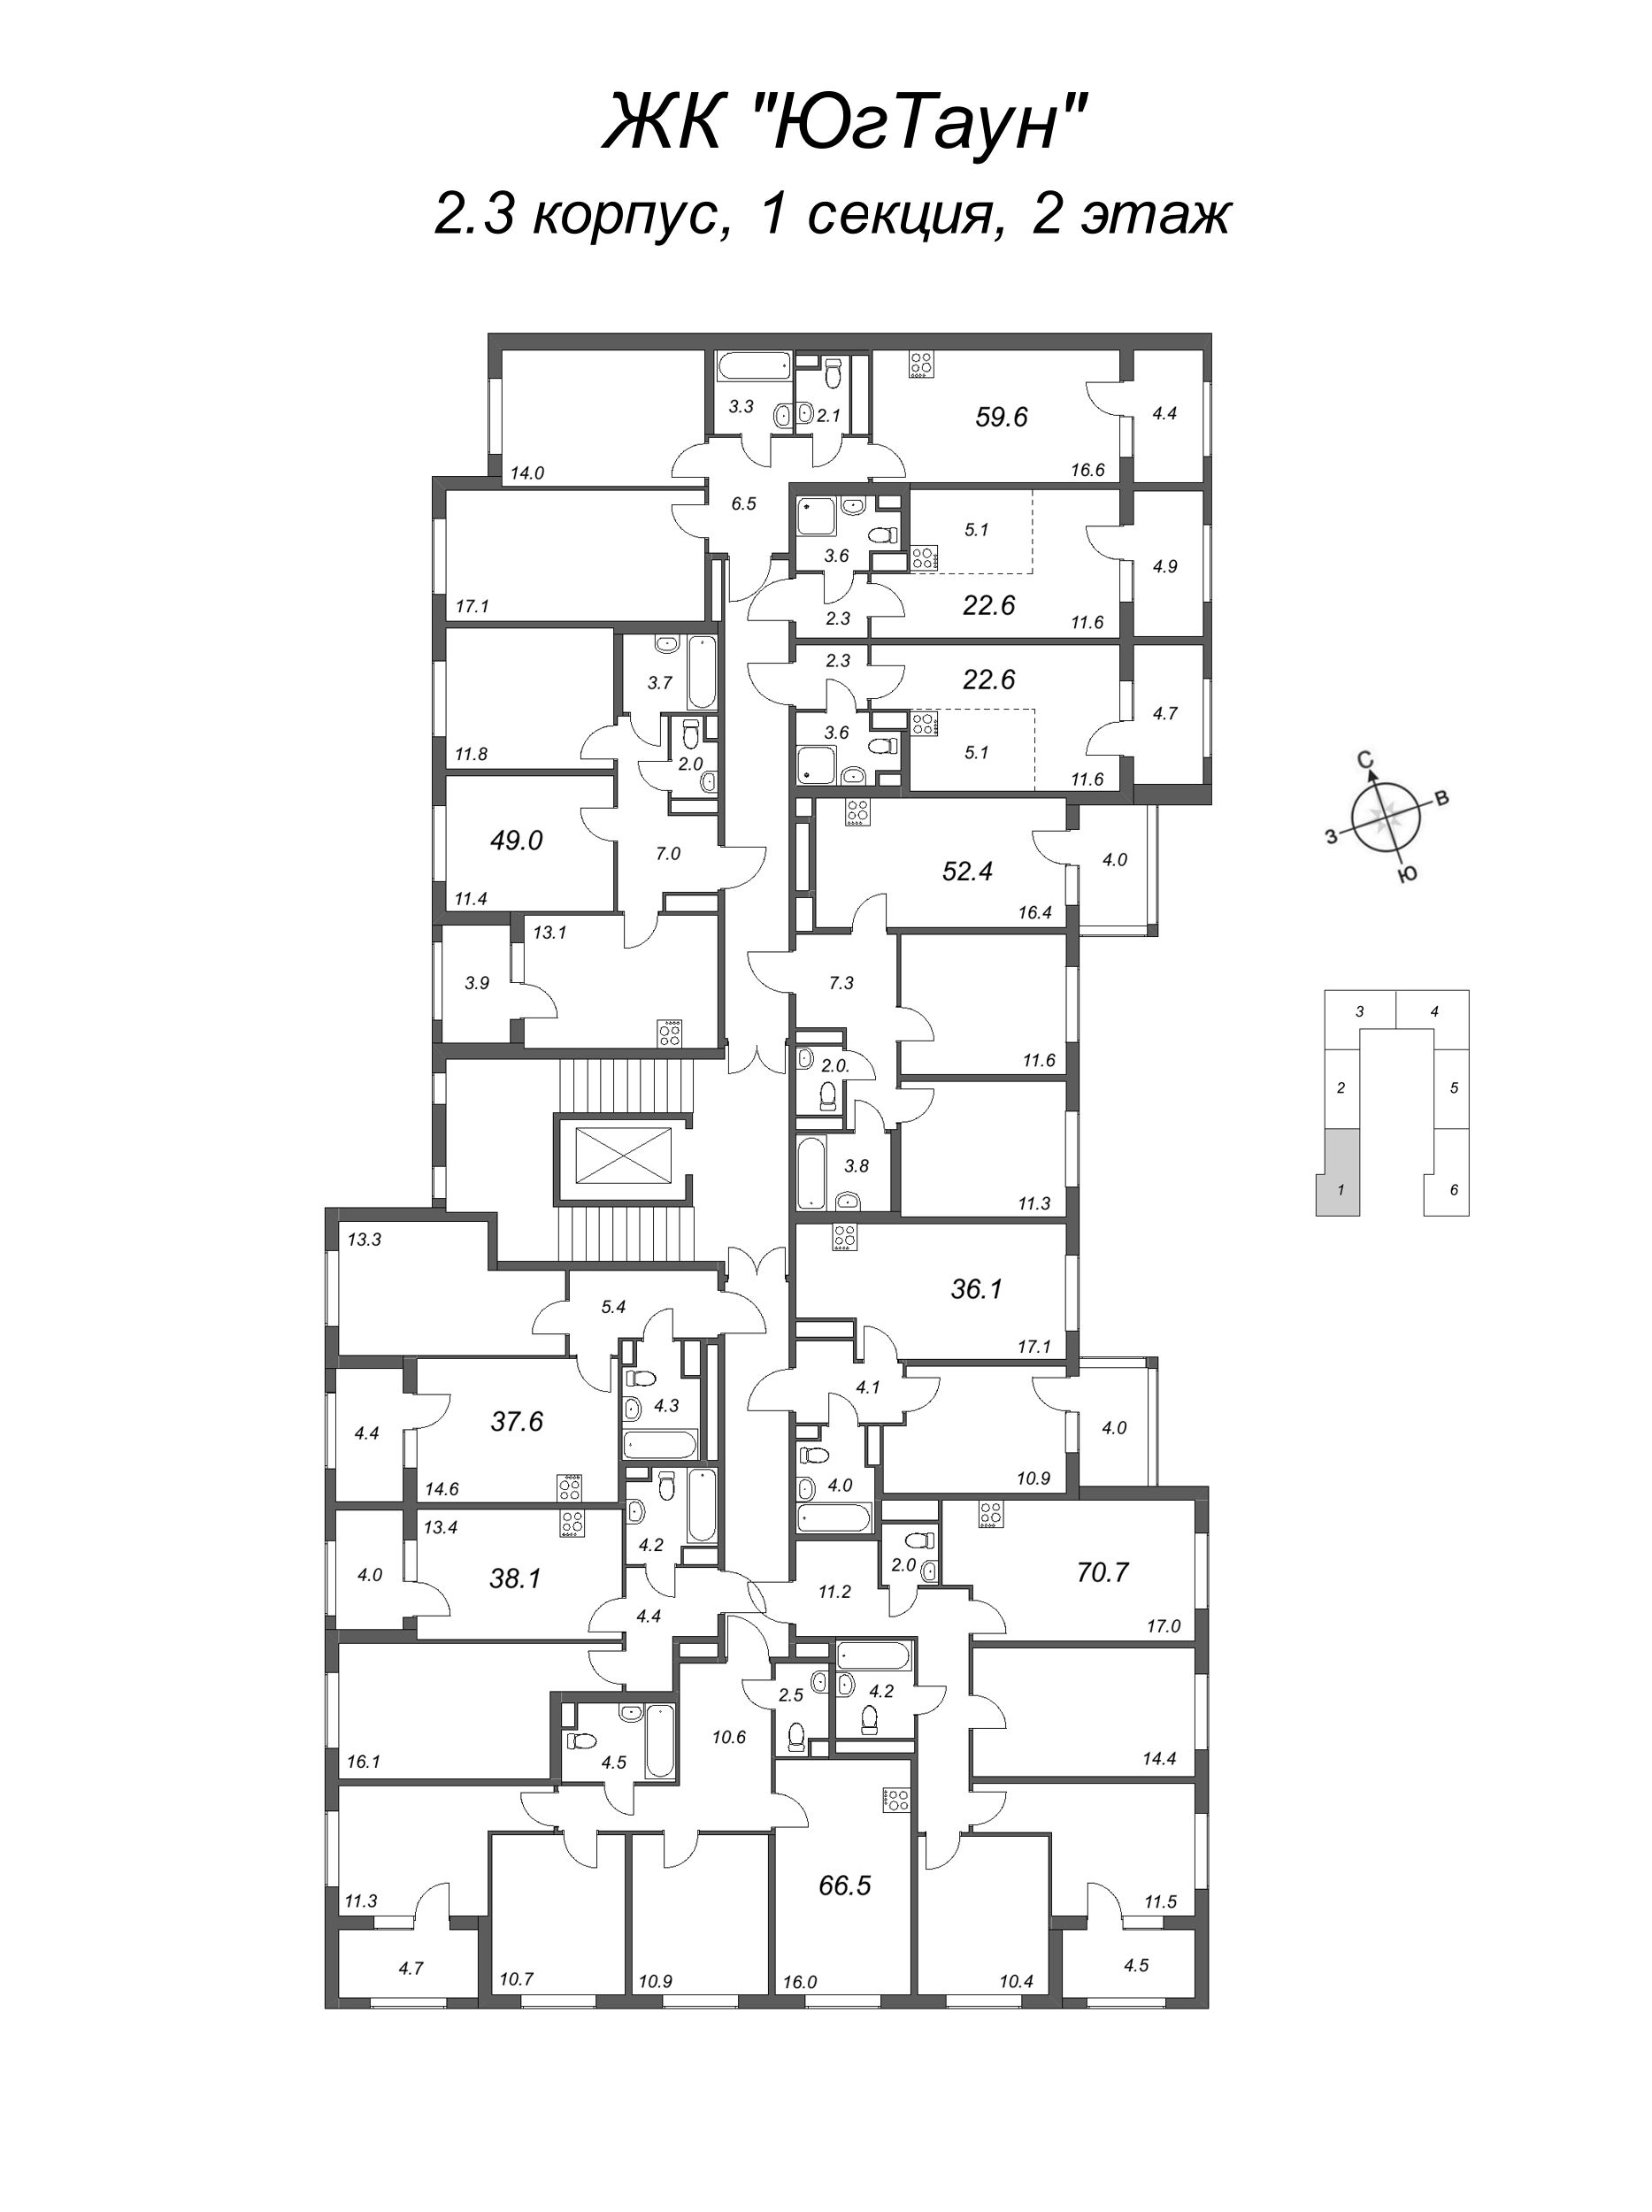 Квартира-студия, 22.6 м² в ЖК "ЮгТаун" - планировка этажа